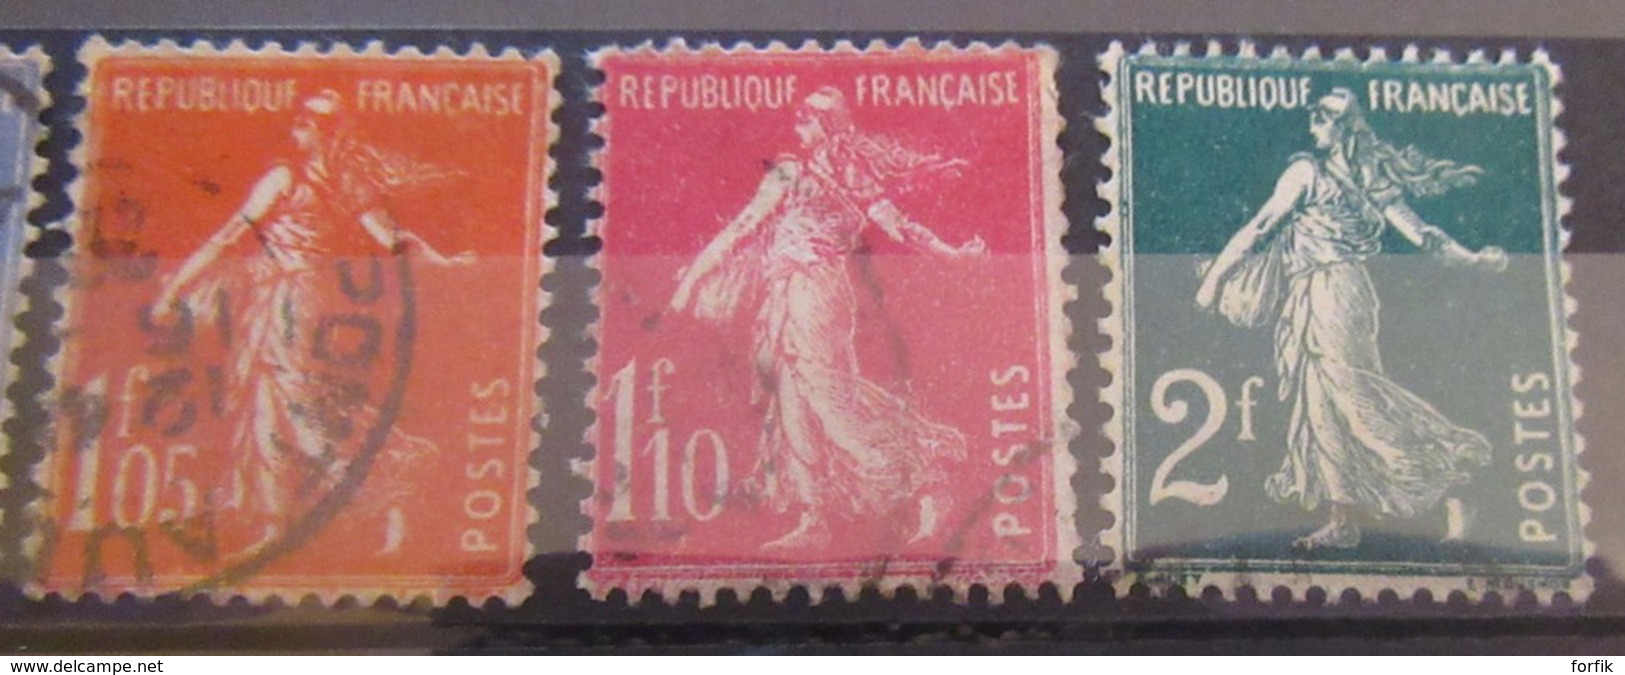 France - Collection de 46 timbres Semeuse dont paires, surchargés, préobiltérés - Neufs* ou oblitérés - Pour étude